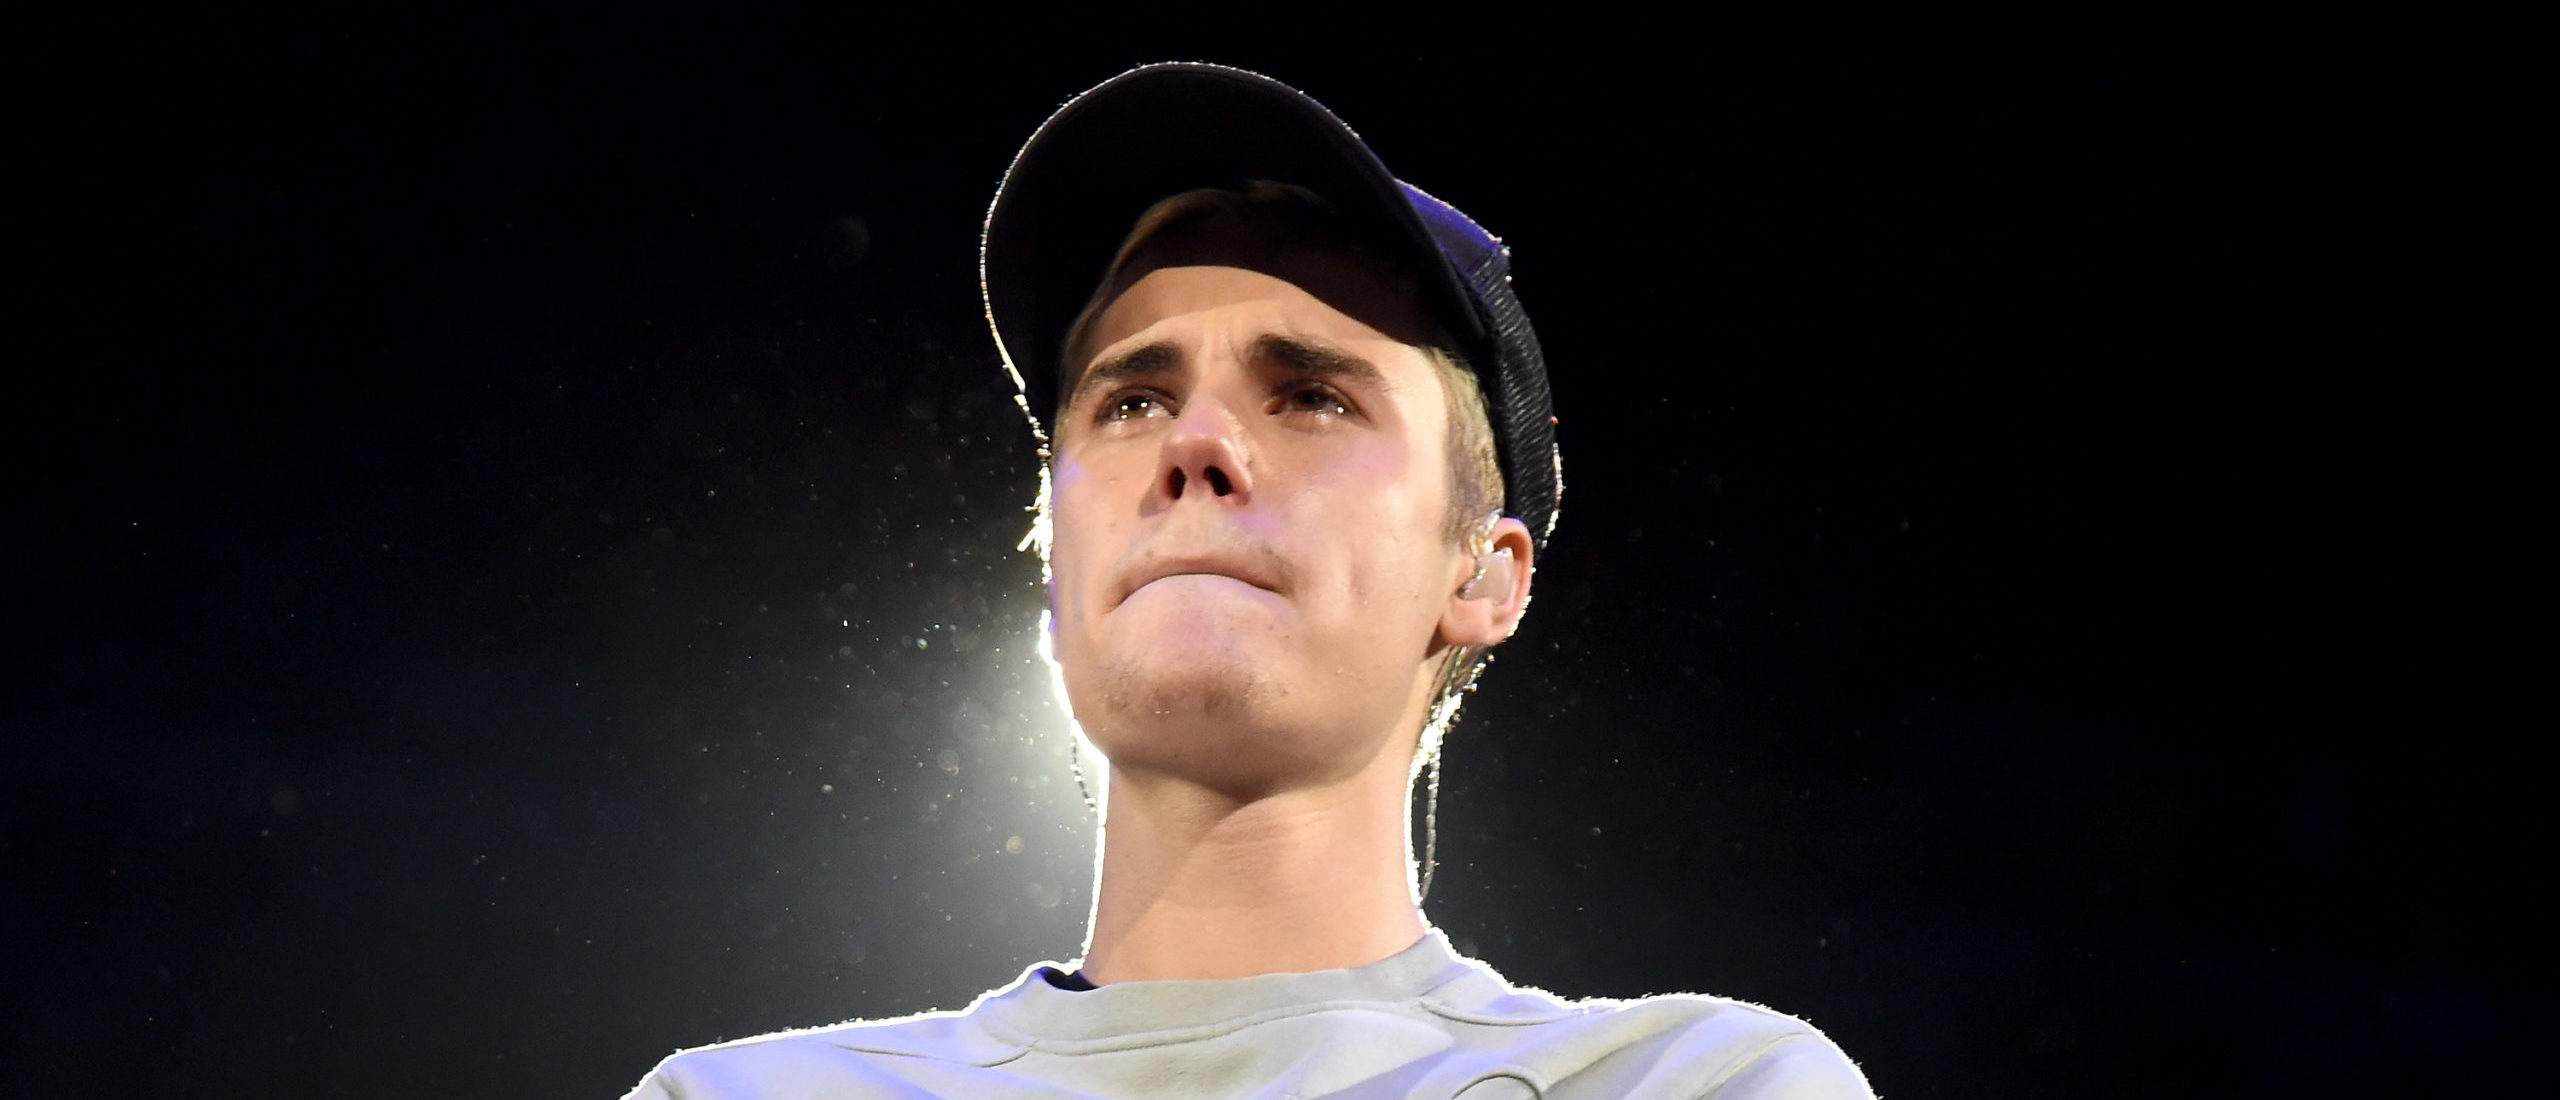 Justin Bieber comparte importante actualización médica con los fanáticos después de ser diagnosticado con el síndrome de Ramsay Hunt